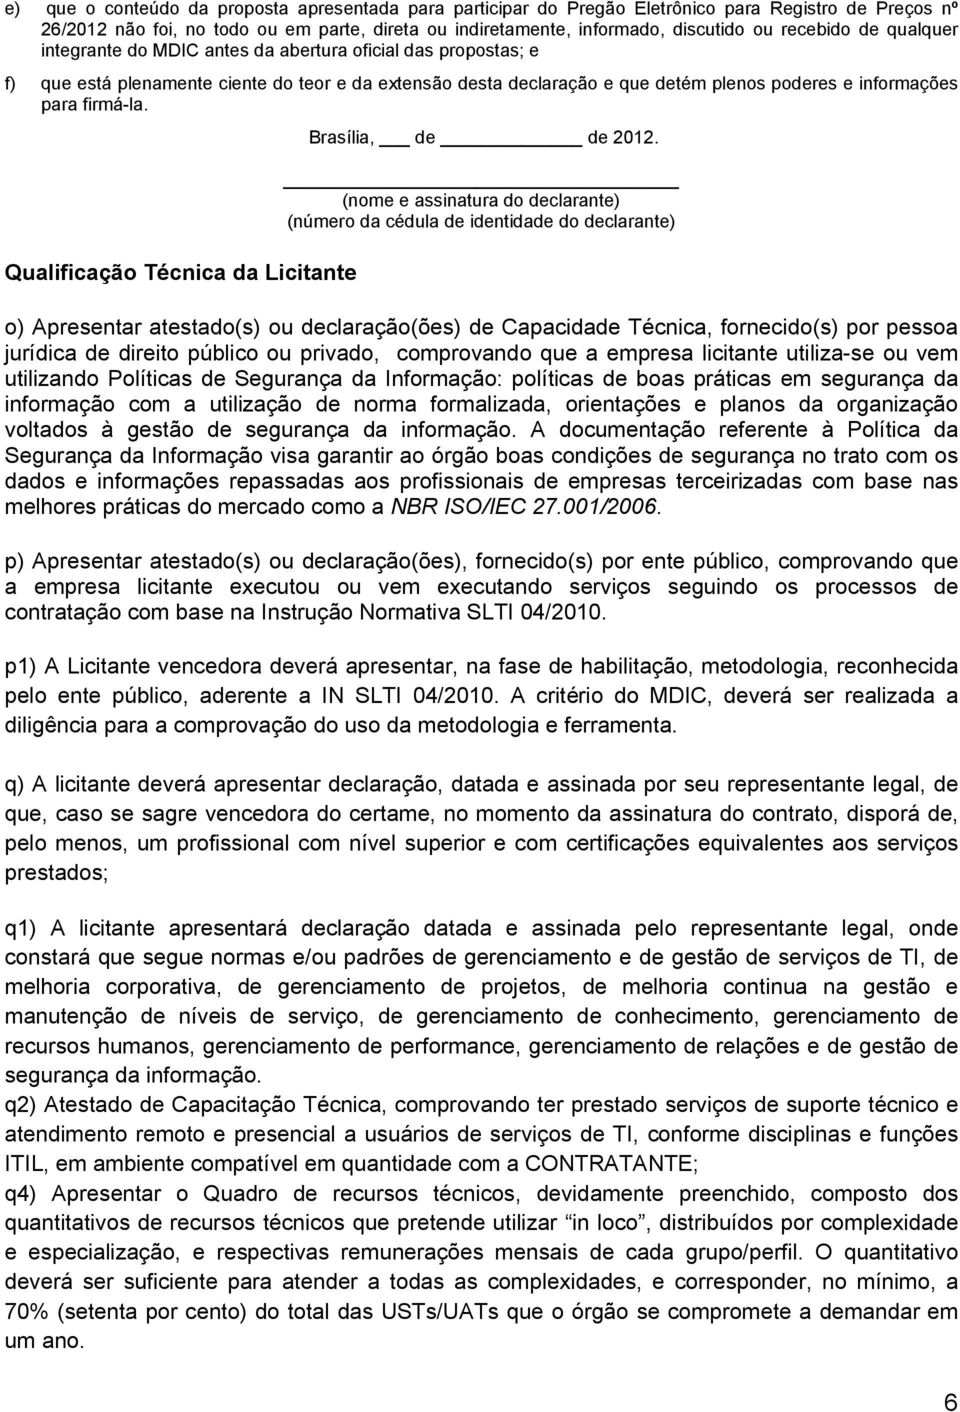 firmá-la. Qualificação Técnica da Licitante Brasília, de de 2012.